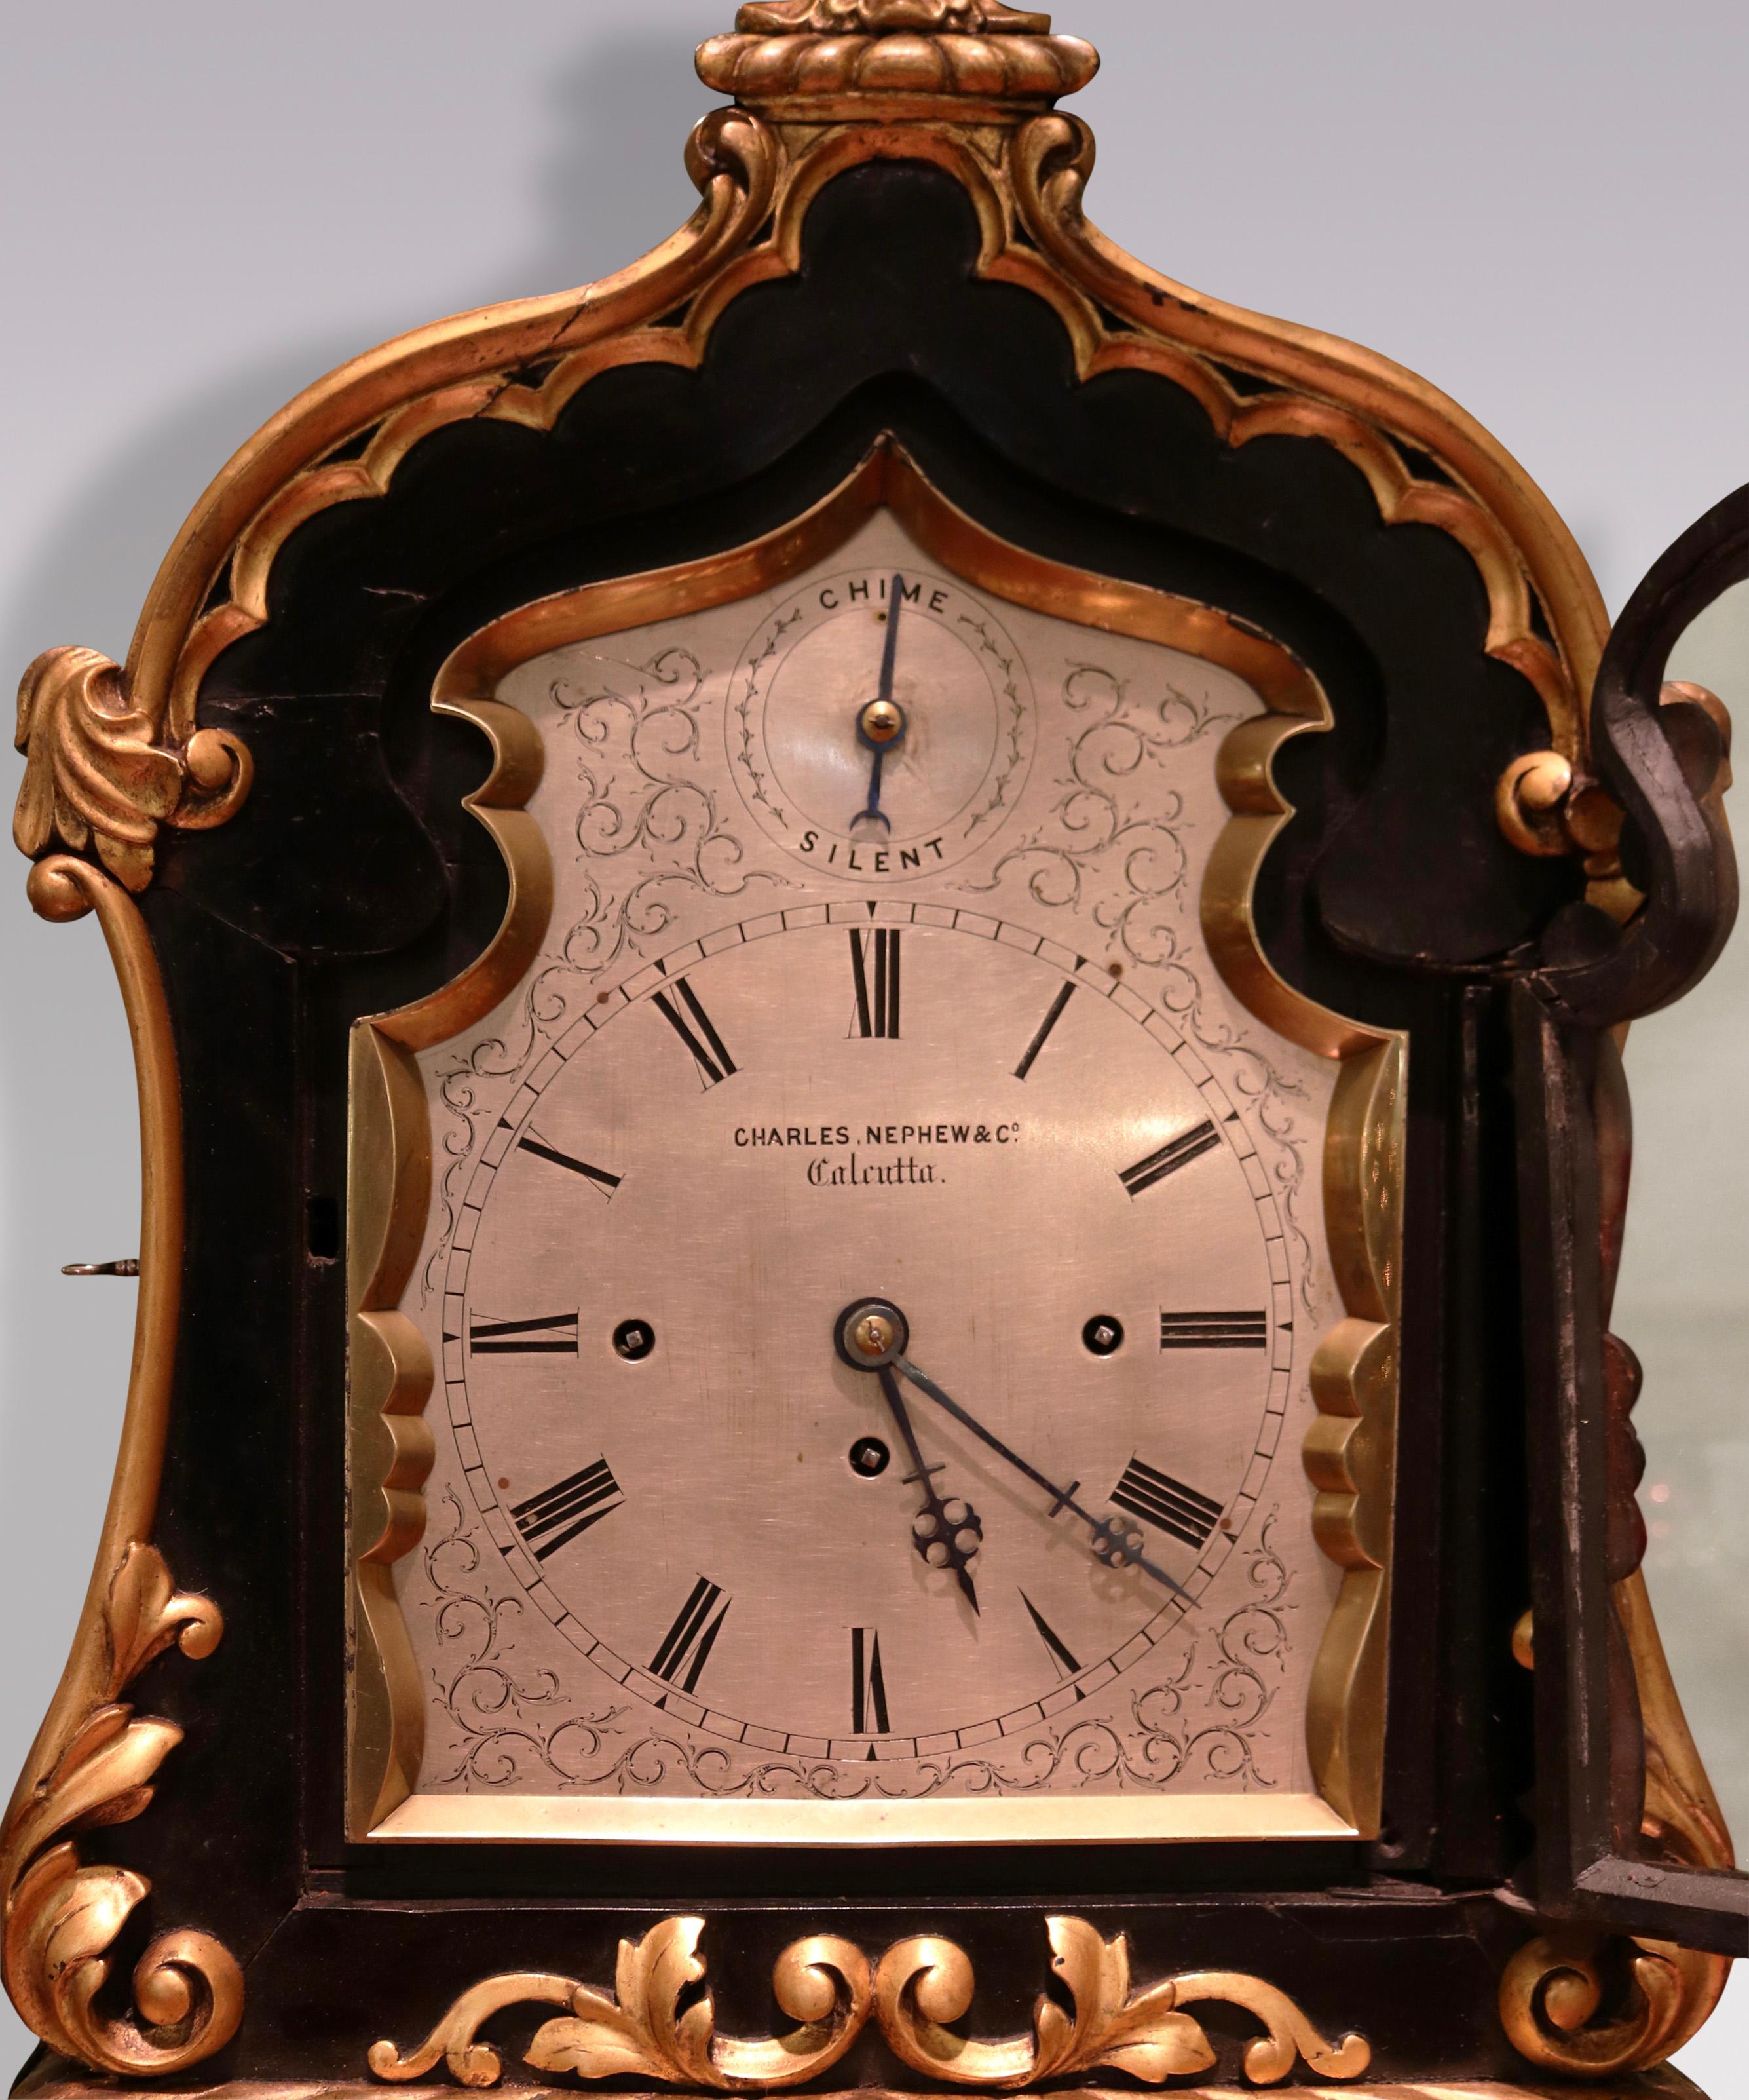 Eine seltene Konsolenuhr aus der Mitte des 19. Jahrhunderts von ungewöhnlich großen Proportionen, mit versilbertem Zifferblatt und 8-Tage-Wiederholungswerk, das auf Glocken und Gong schlägt, von Charles. Nephew & Co, Kalkutta.  Die Uhr ist in einem